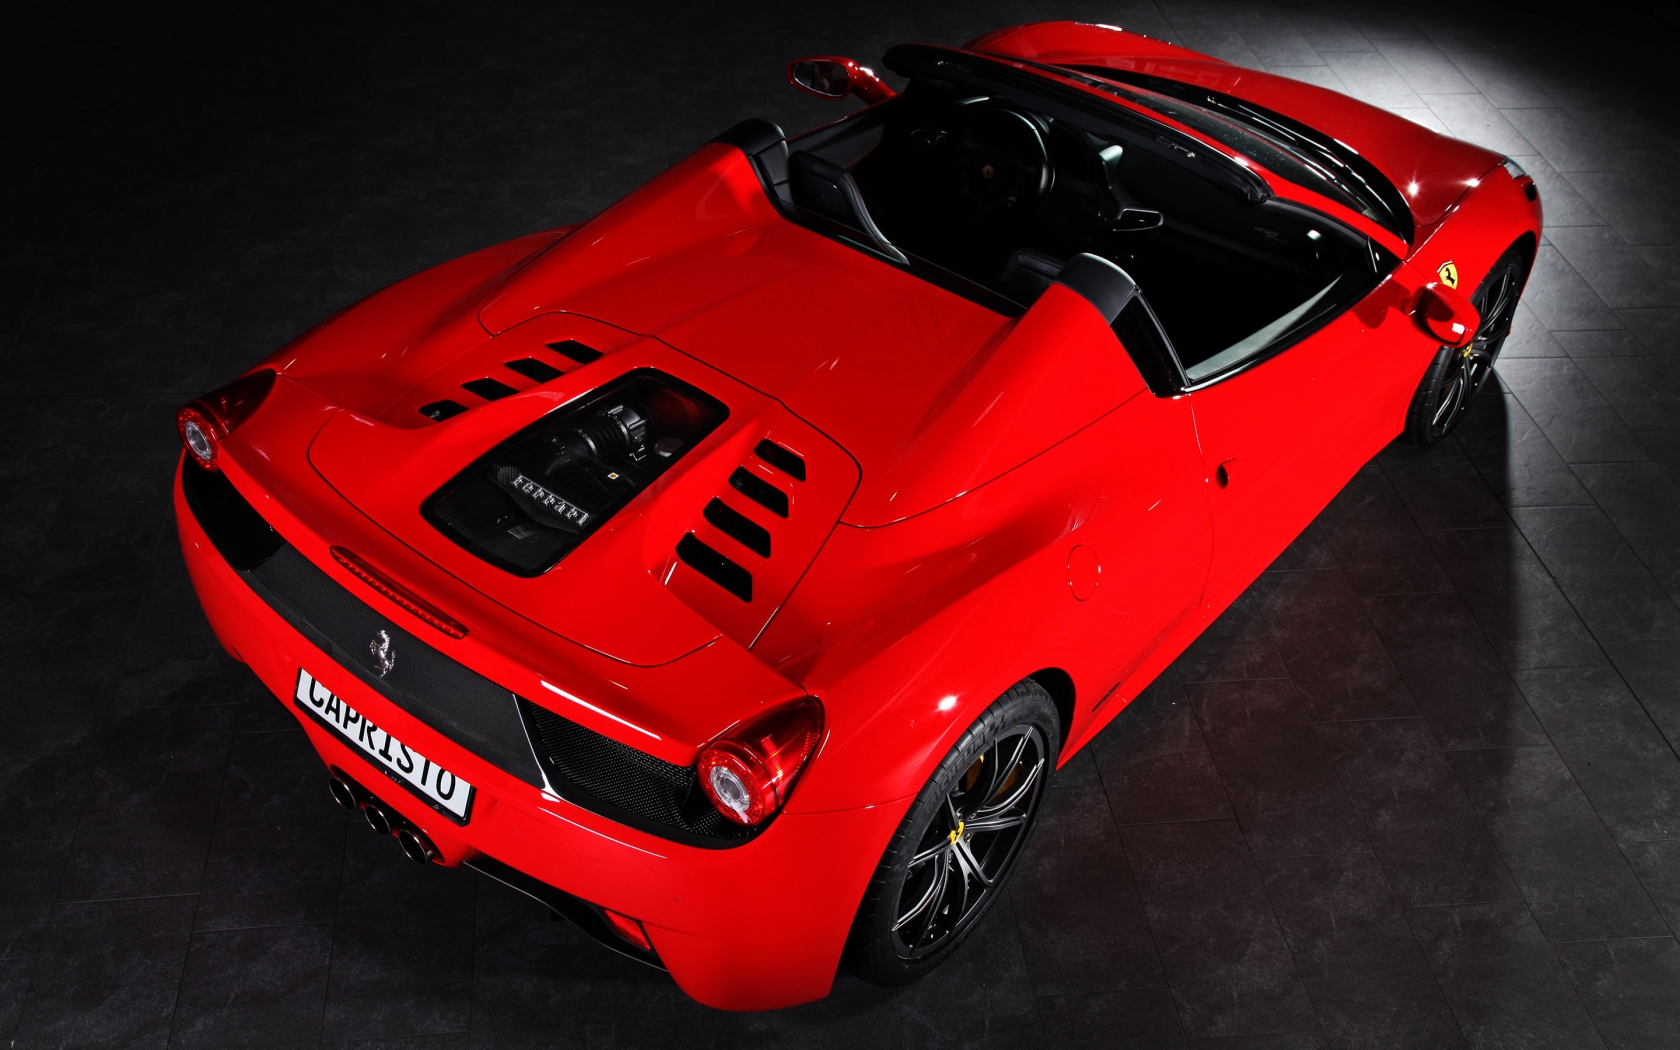 Capristo Ferrari 458 Spider for 1680 x 1050 widescreen resolution